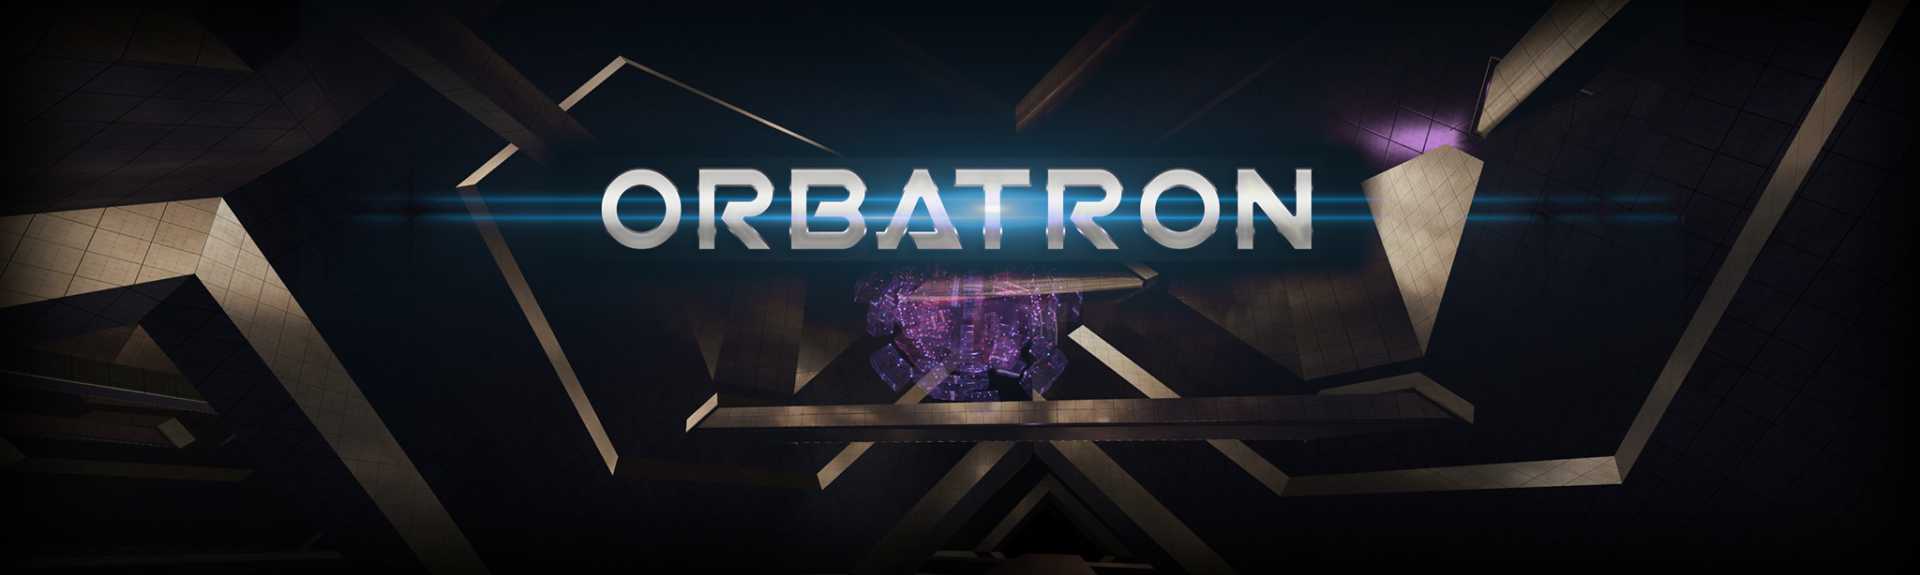 Orbatron